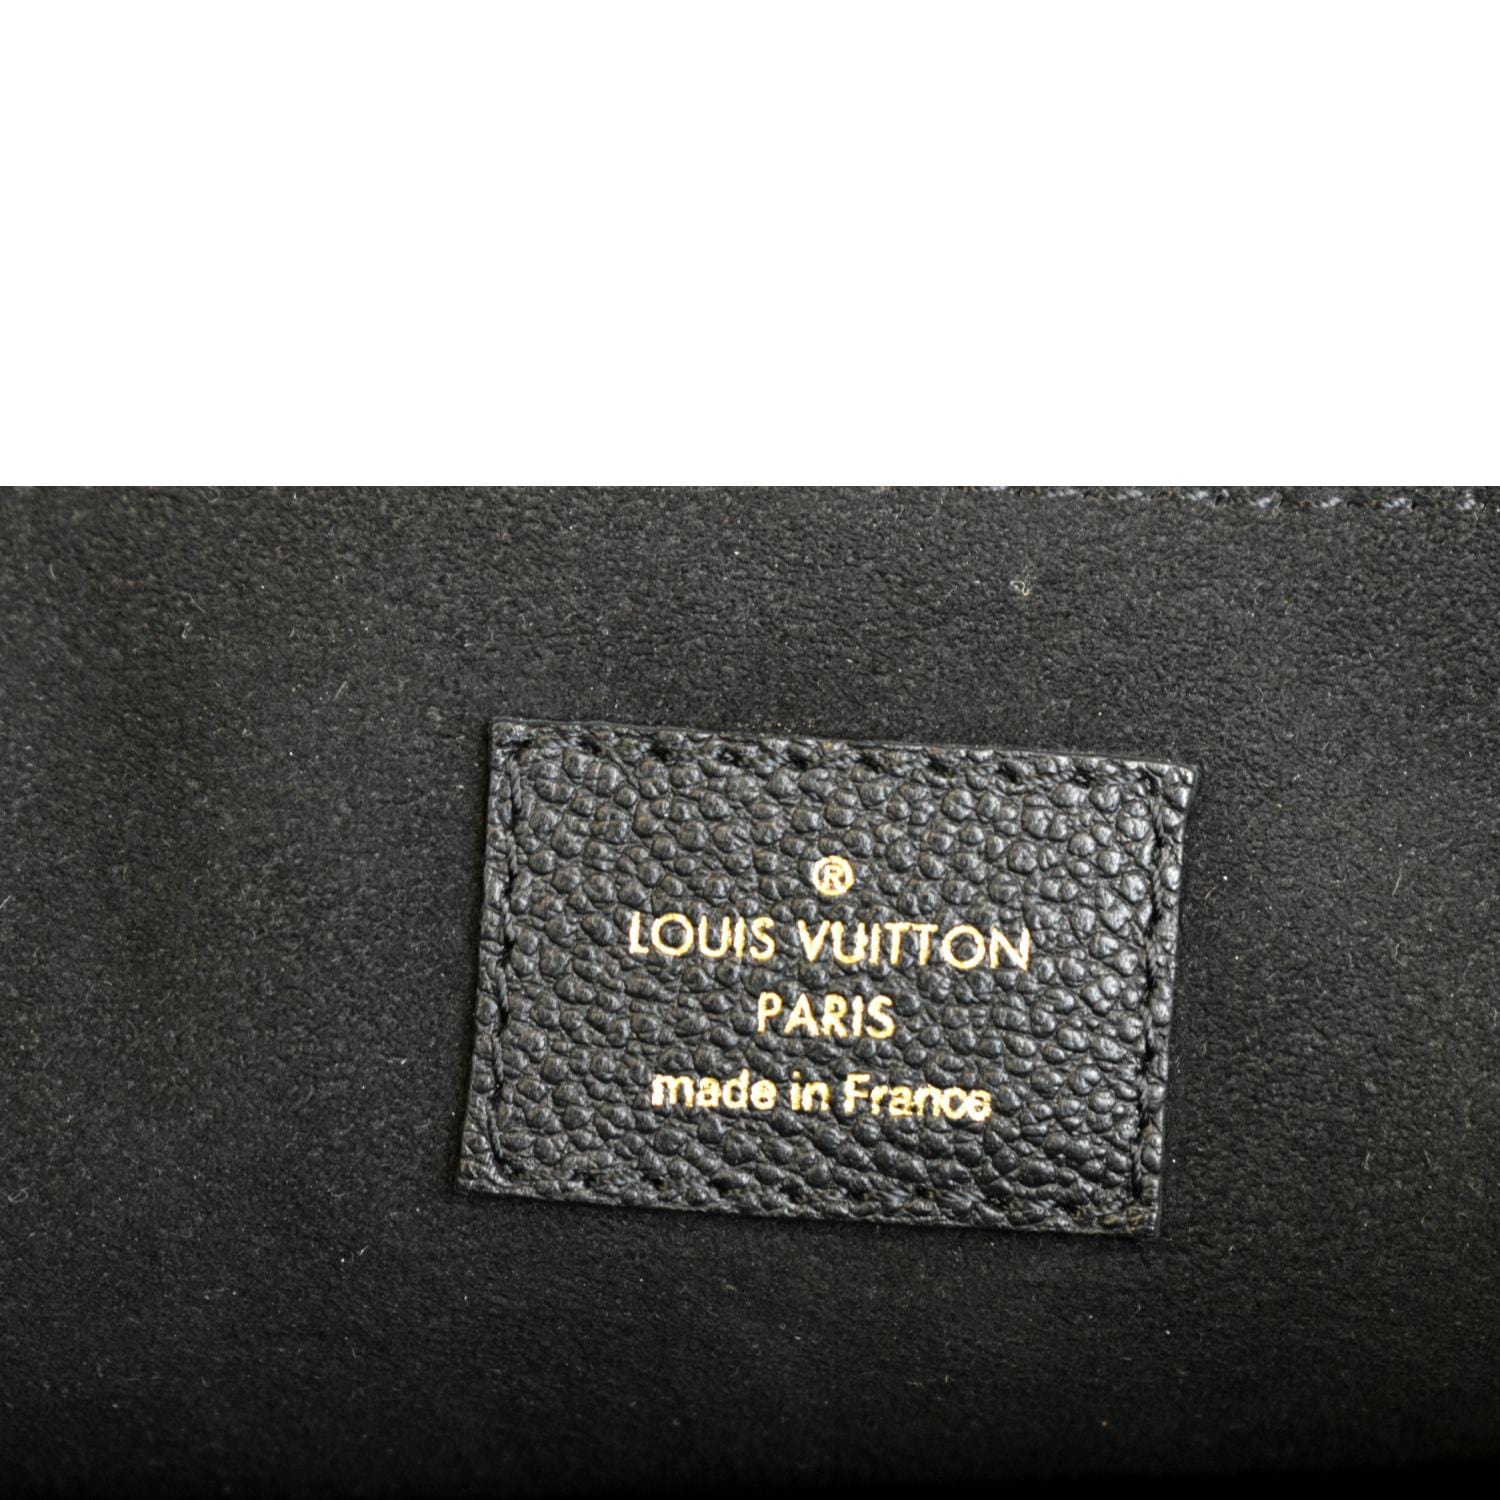 ขายแล้วค่ะ Louis Vuitton Empreinte Saint Germain PM สีดำสภาพดีค่ะ